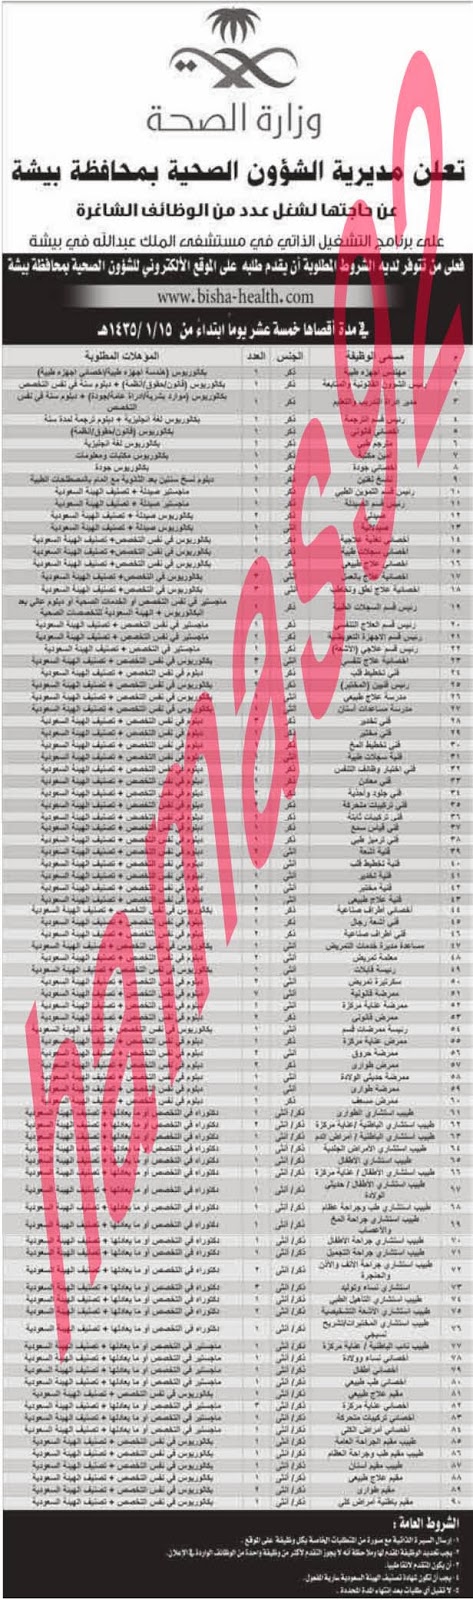 وظائف خالية من جريدة الوطن السعودية الاثنين 18-11-2013 %D8%A7%D9%84%D9%88%D8%B7%D9%86+%D8%B3+1